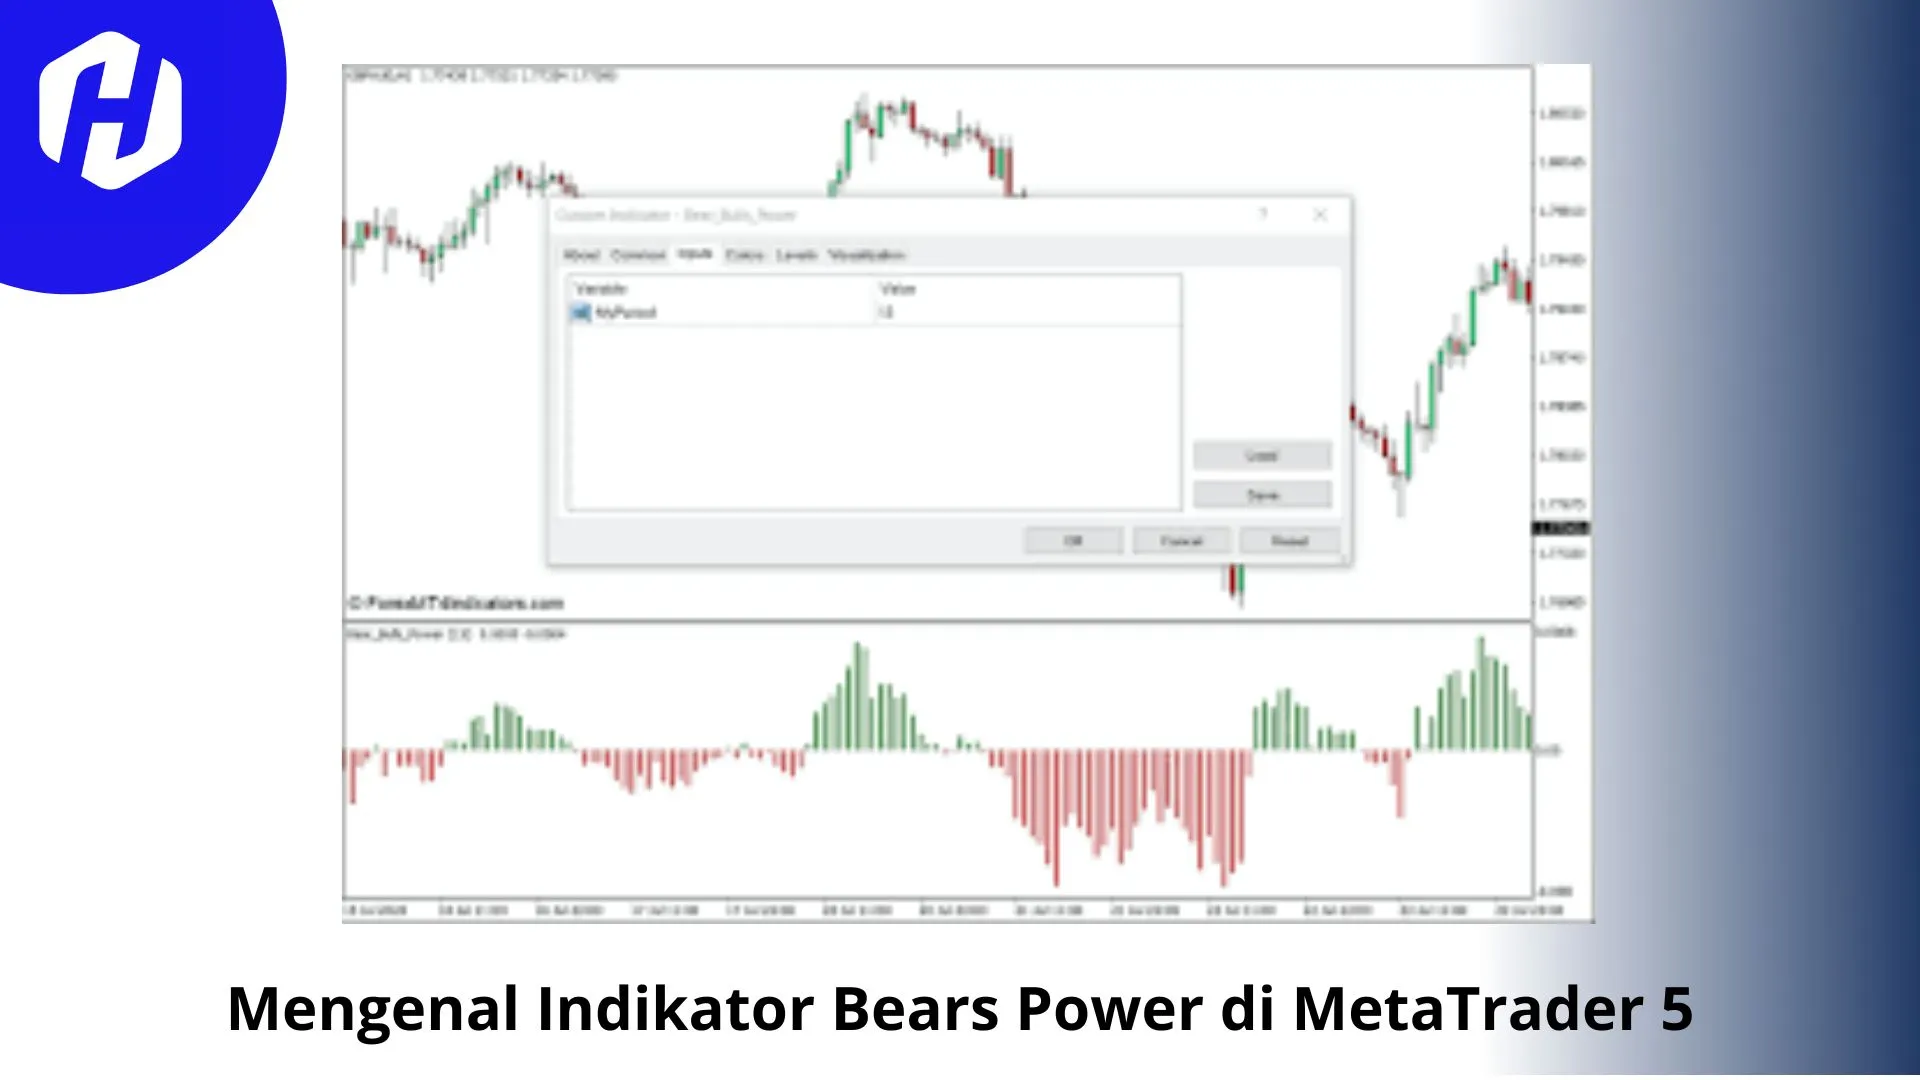 Mengenal Indikator Bears Power di MetaTrader 5